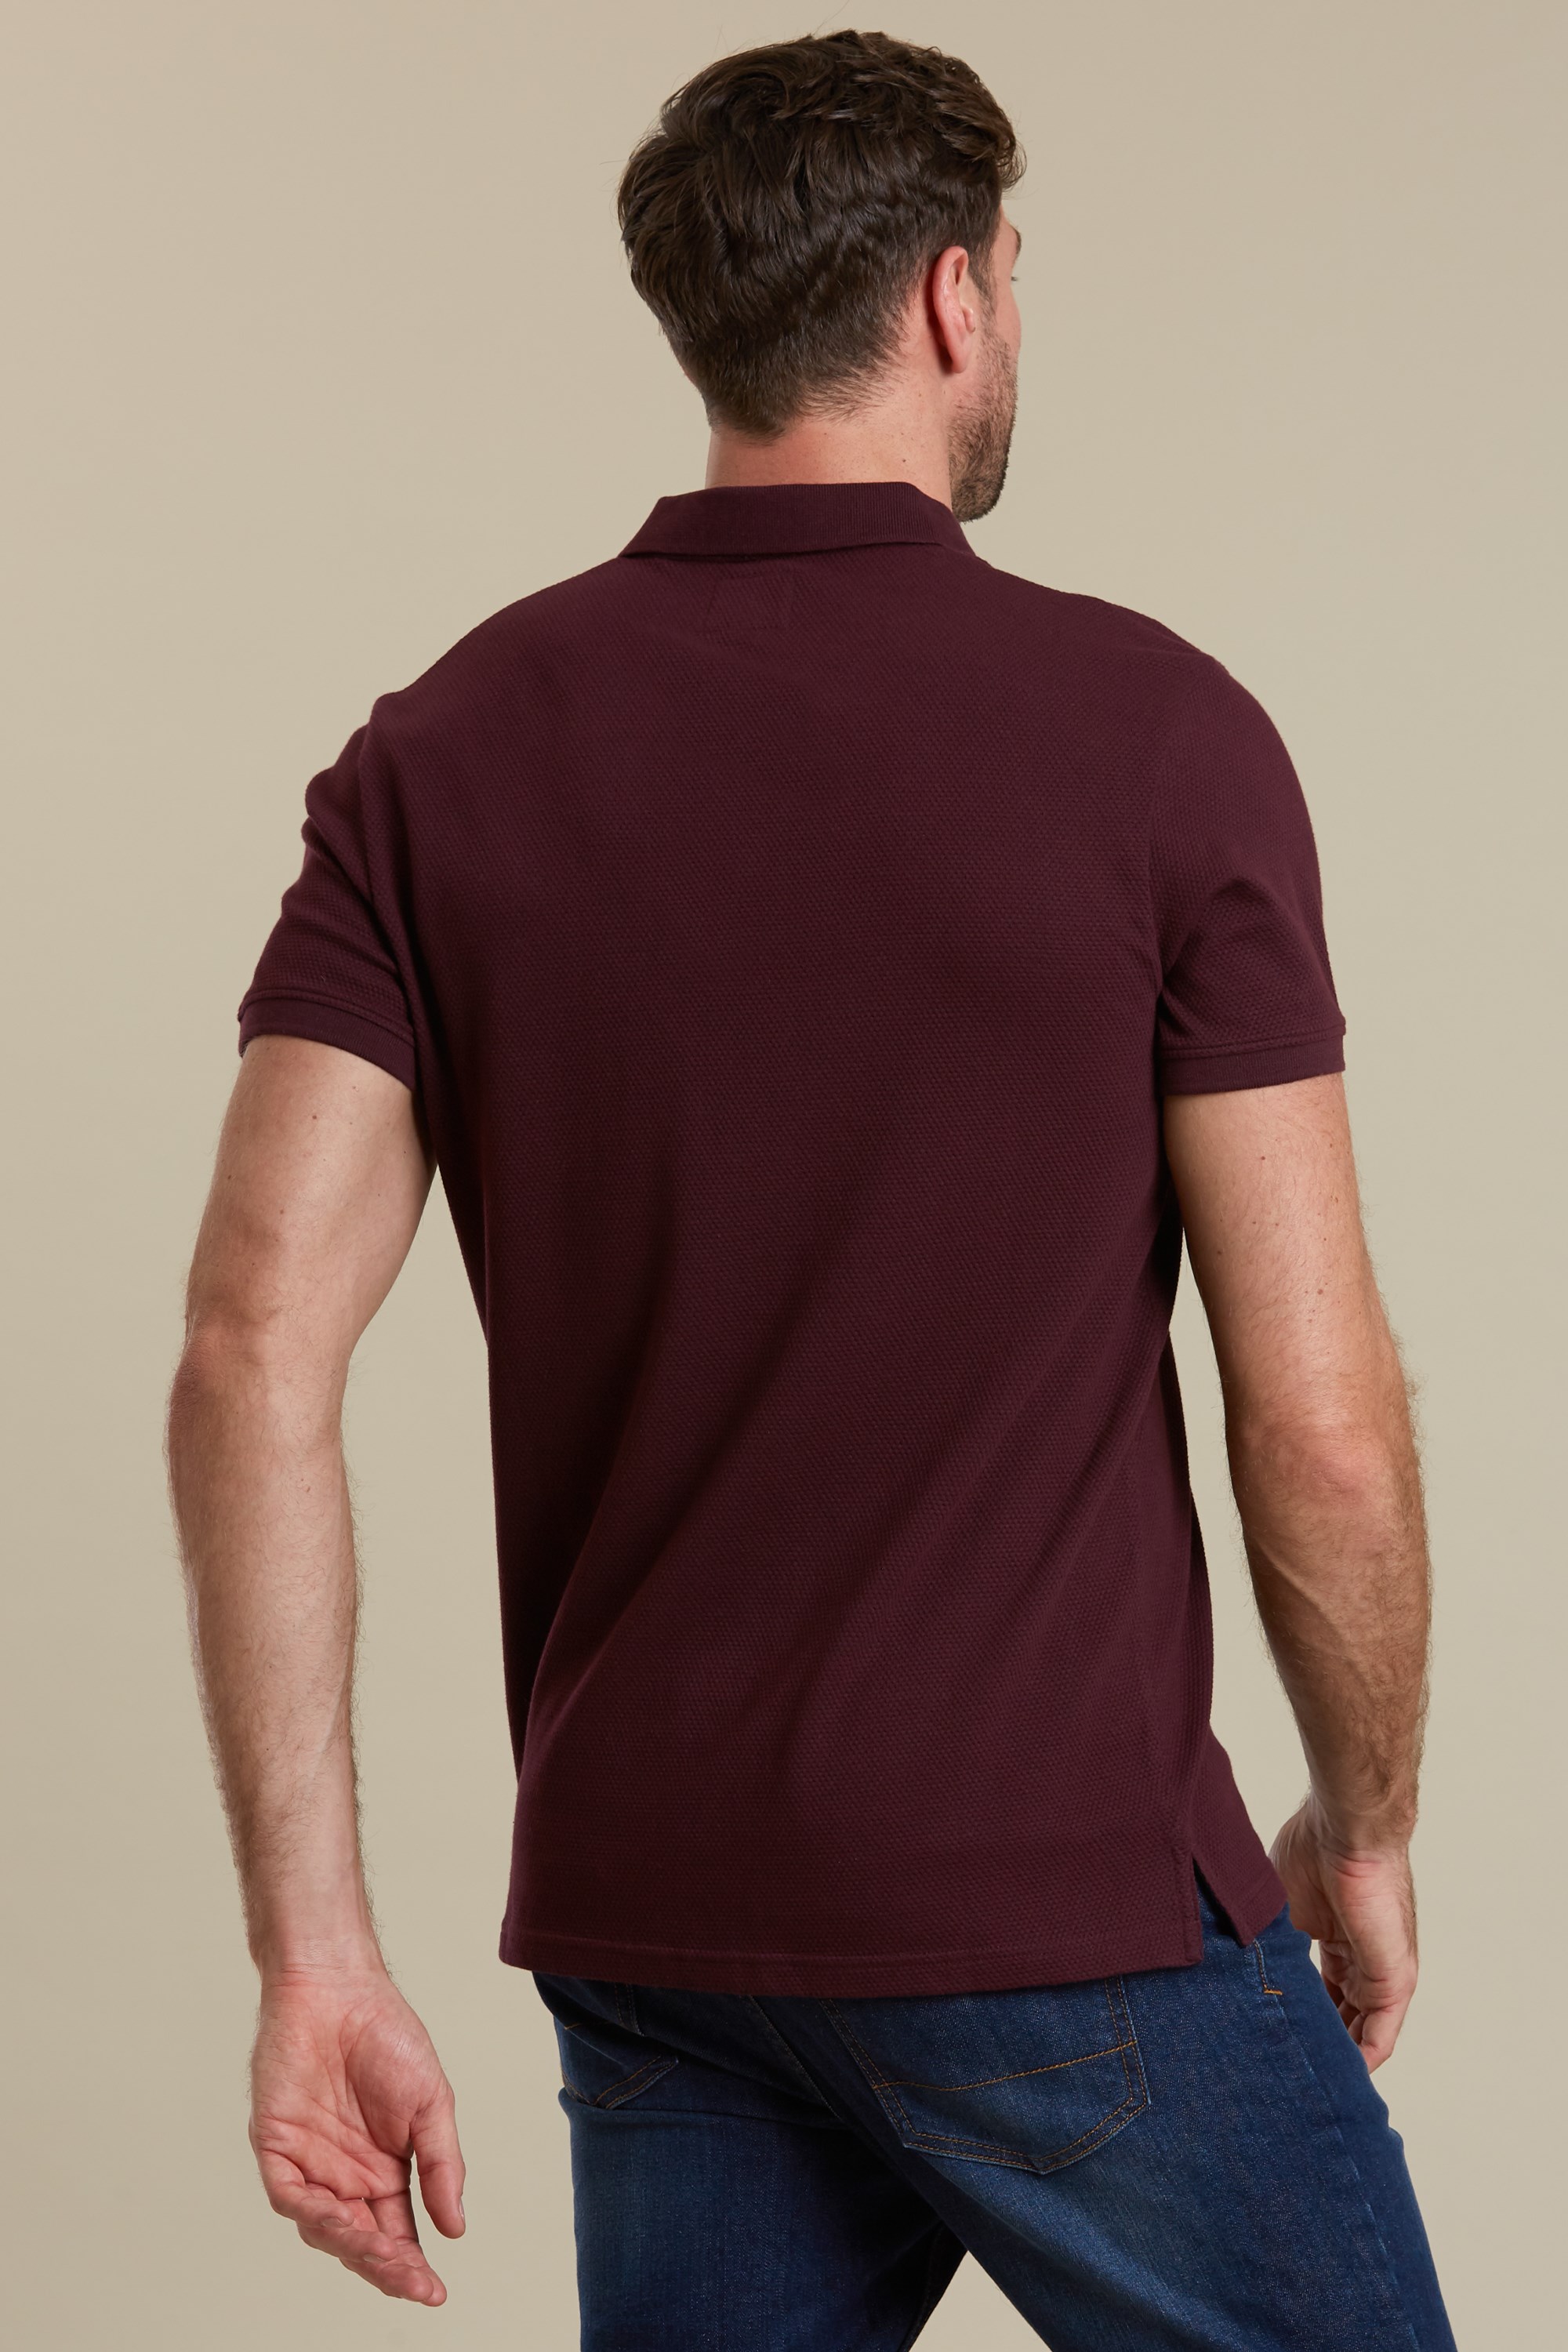 Download Download Mens Pocket T-Shirt Front Half-Side View Images ...